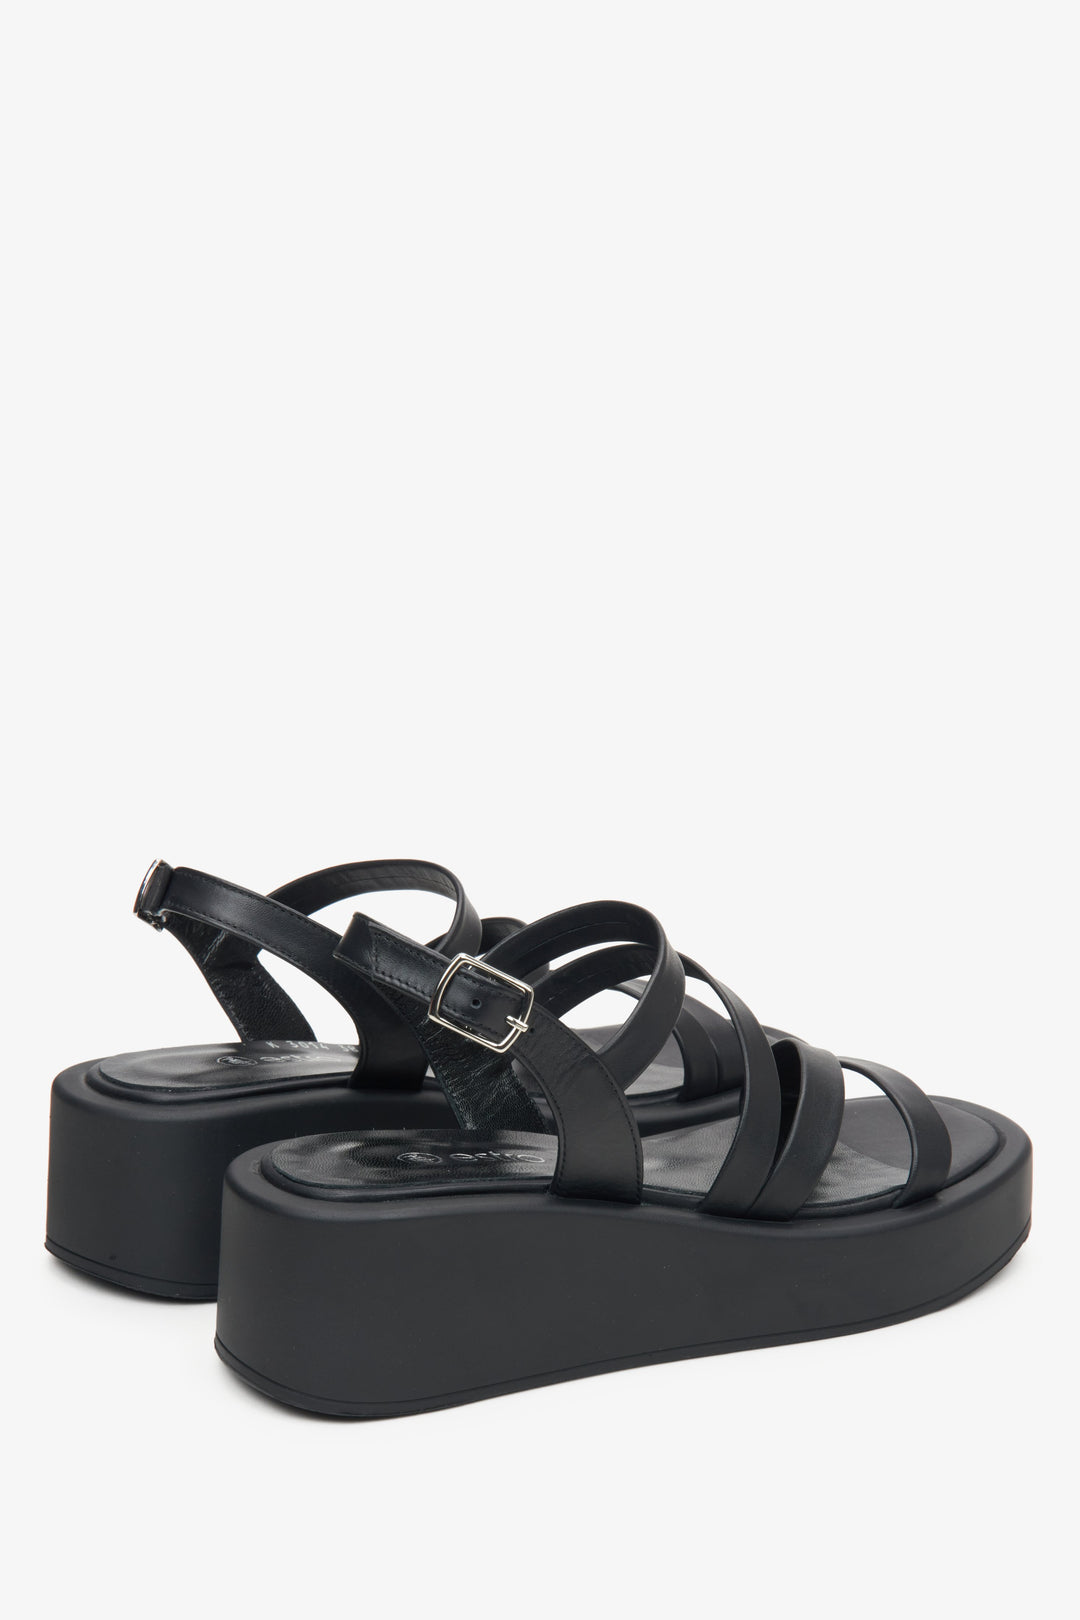 Skórzane czarne sandały damskie na koturnie Estro - zbliżenie na linię boczną i zapiętek buta.